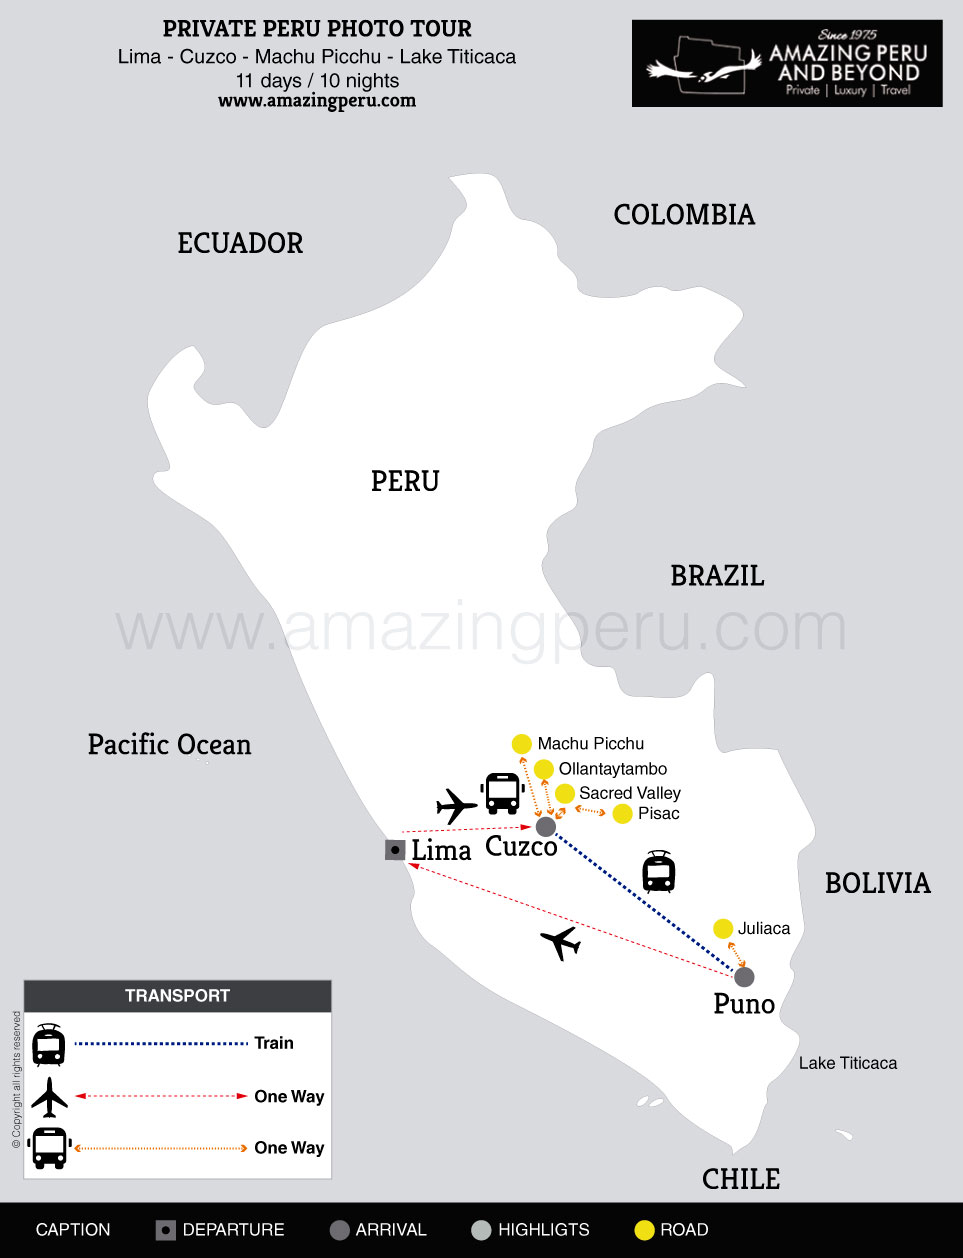 2022 Private Peru Photo Tour - 11 days / 10 nights.